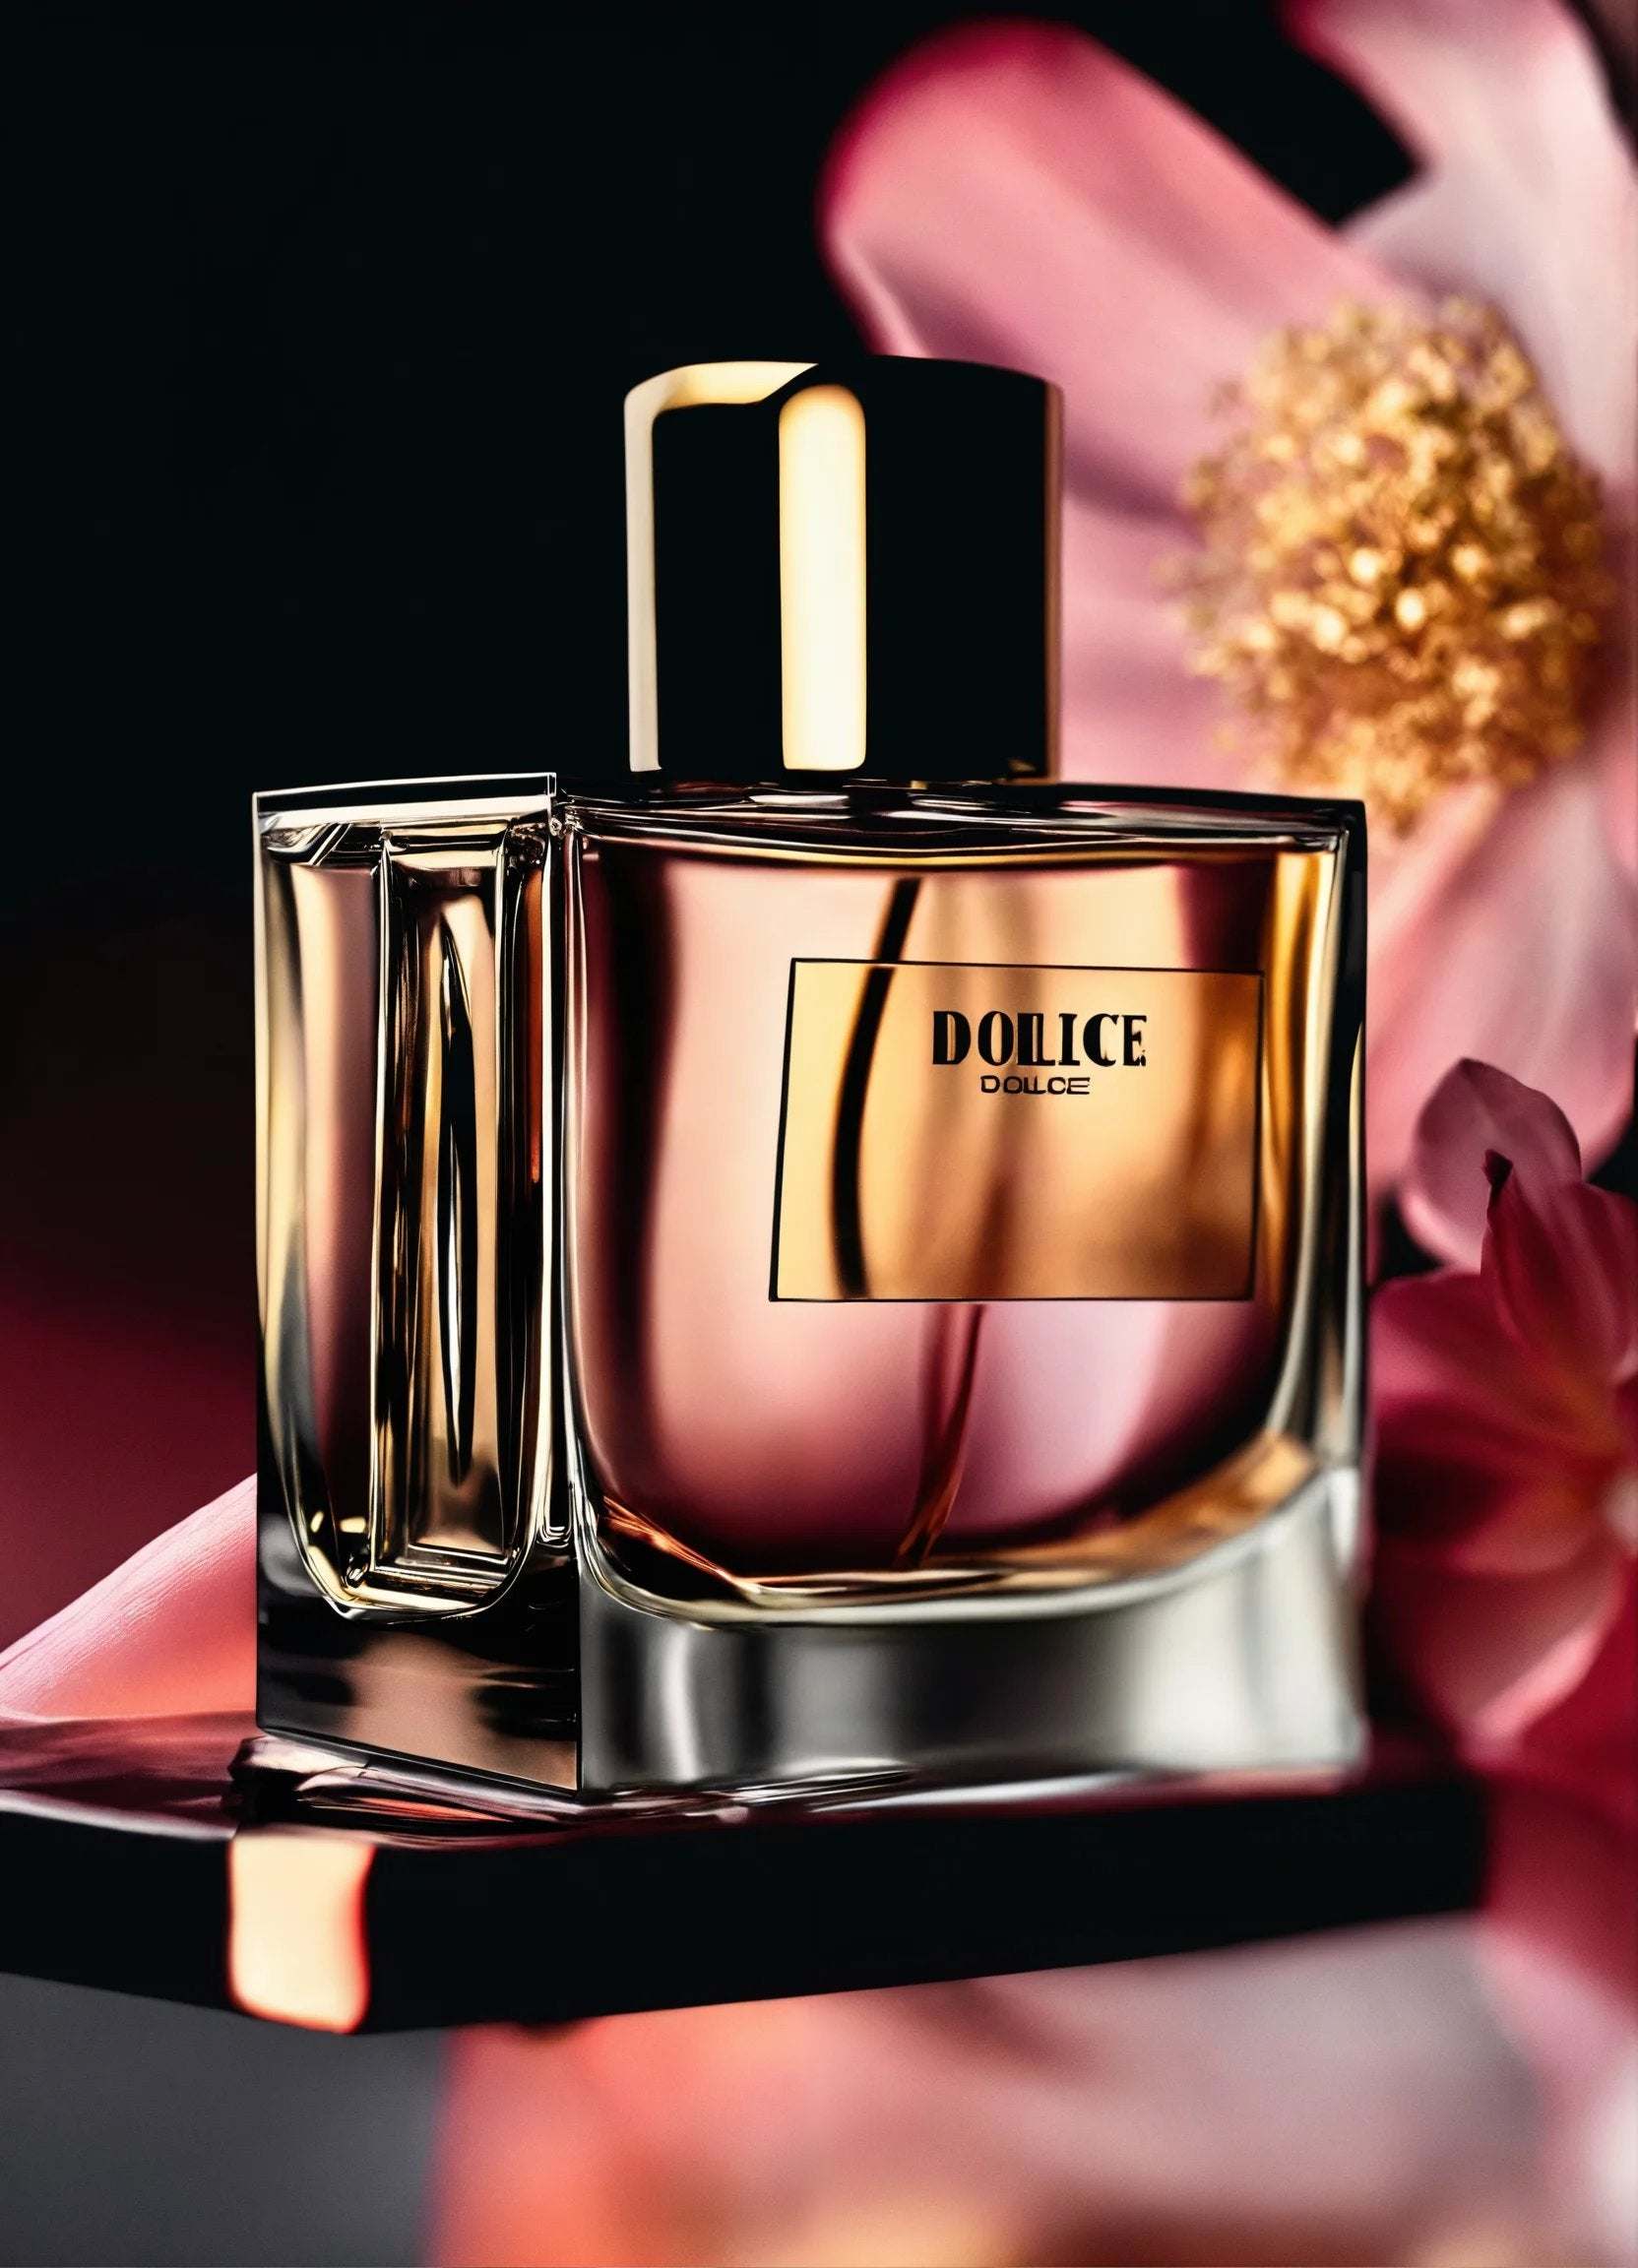 Dolruce Medir black perfume for men